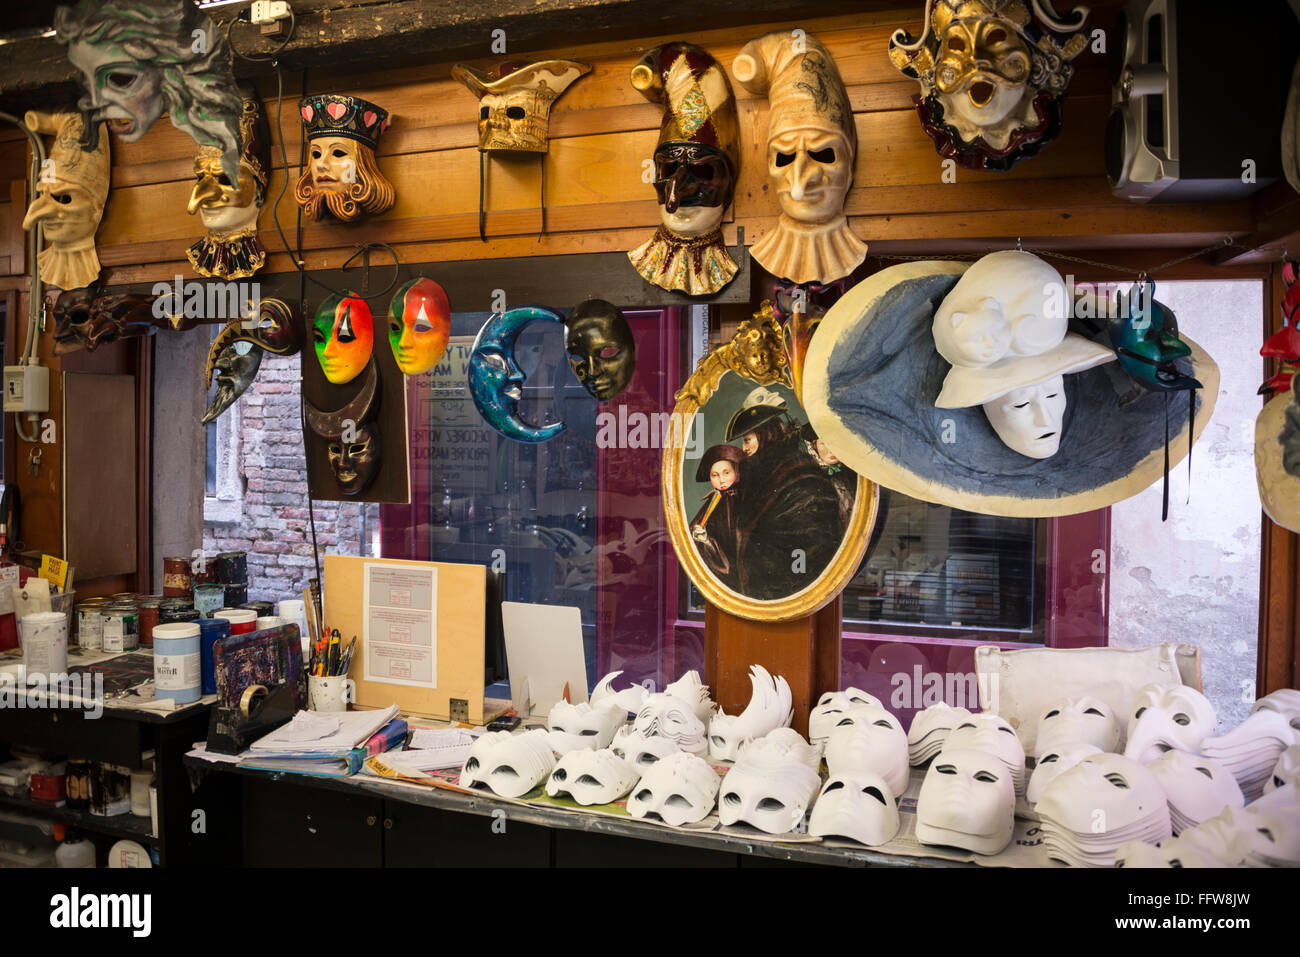 Une vitrine de masques faciaux dans un magasin de fabrication de masques fait à la main/studio d'art appelé ‘CA’ Macana’ dans une rue étroite, appelée Dorsoduro, dans l'université di Banque D'Images